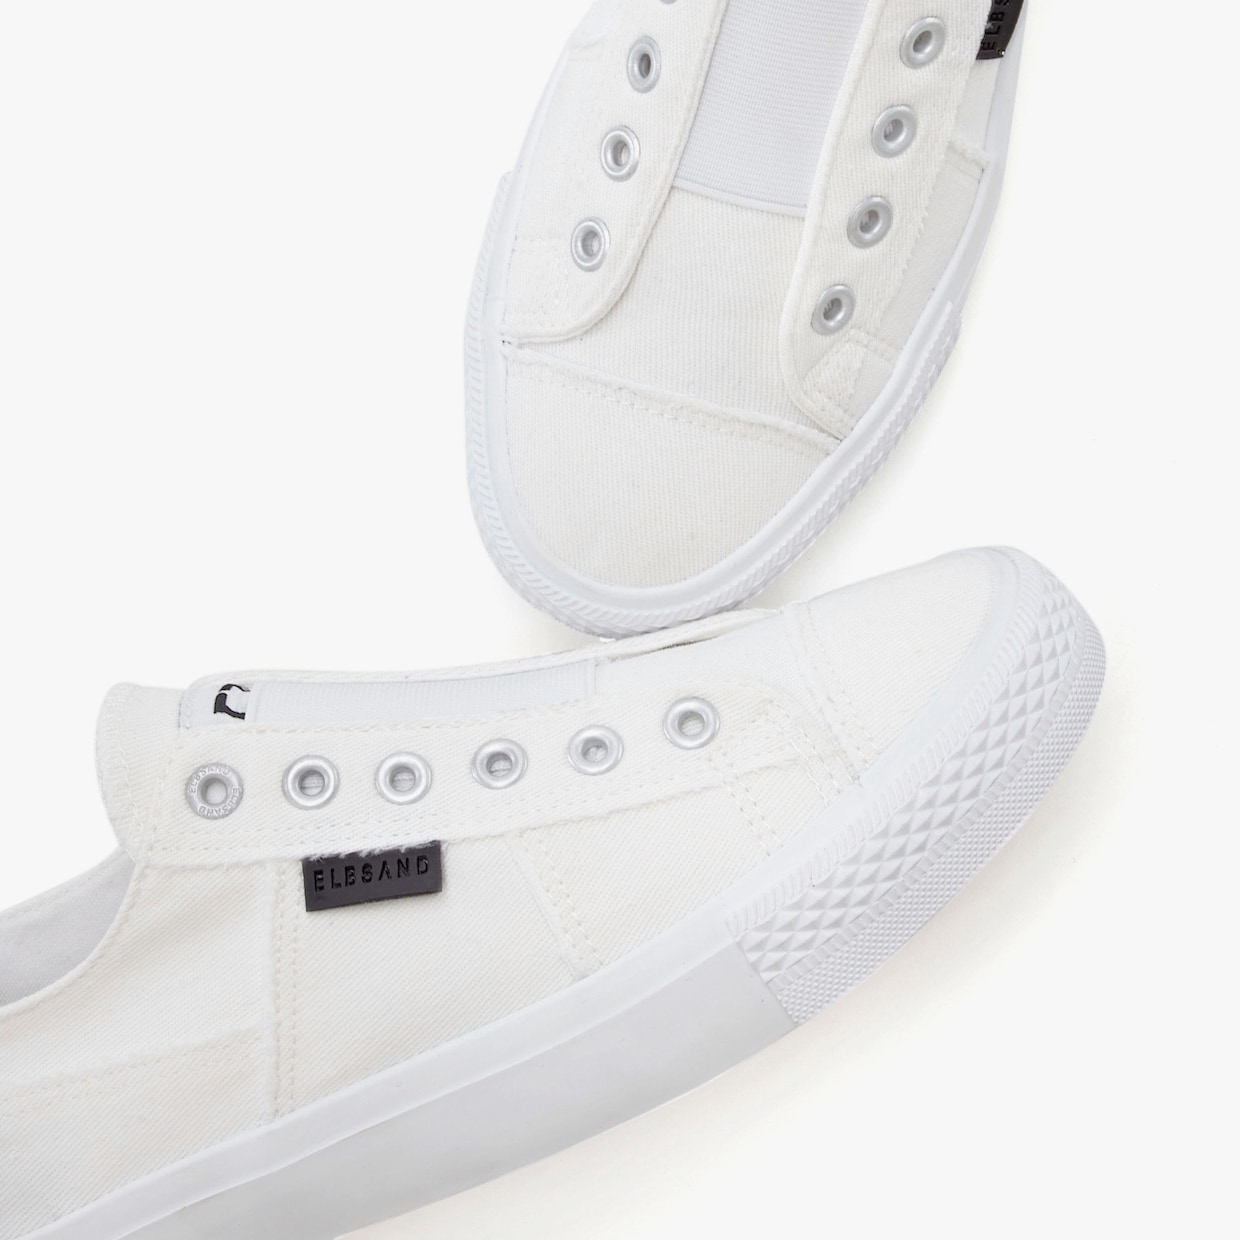 Elbsand Sneakers slip on - blanc